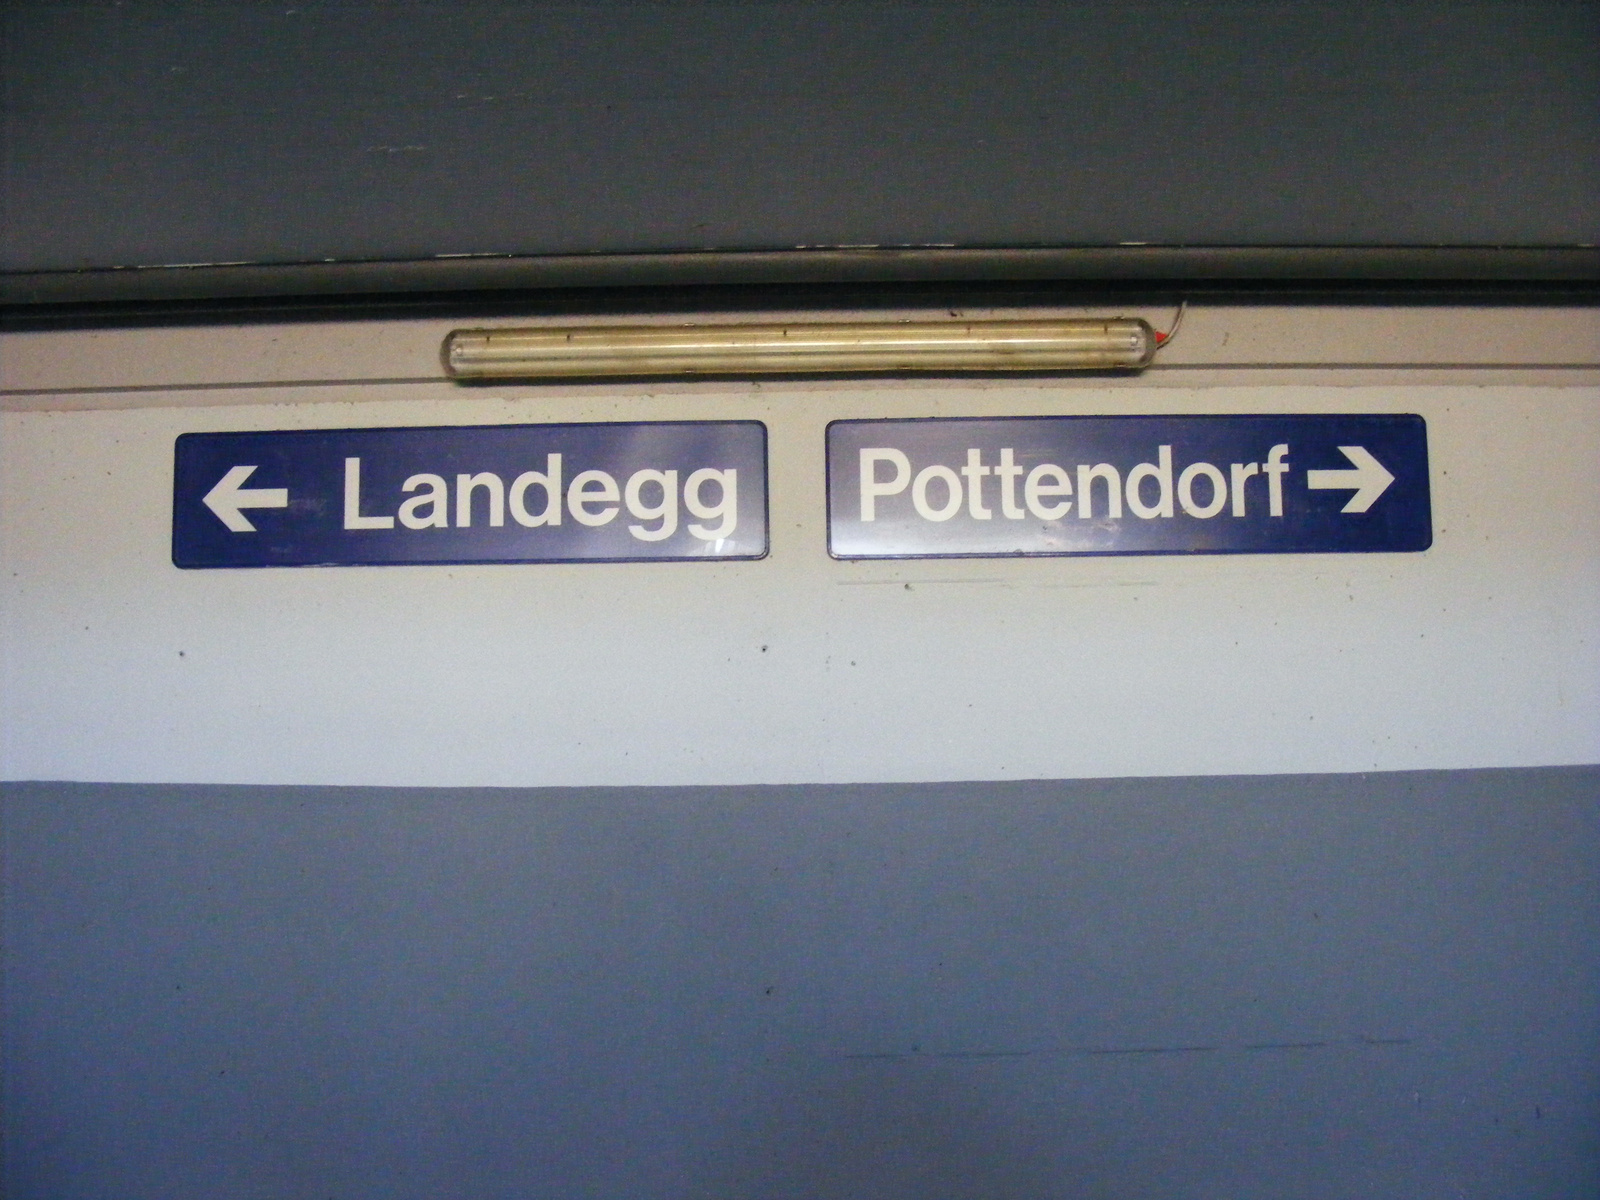 Az aluljáróból Landegg,illetve Pottendorf felé mehetünk.